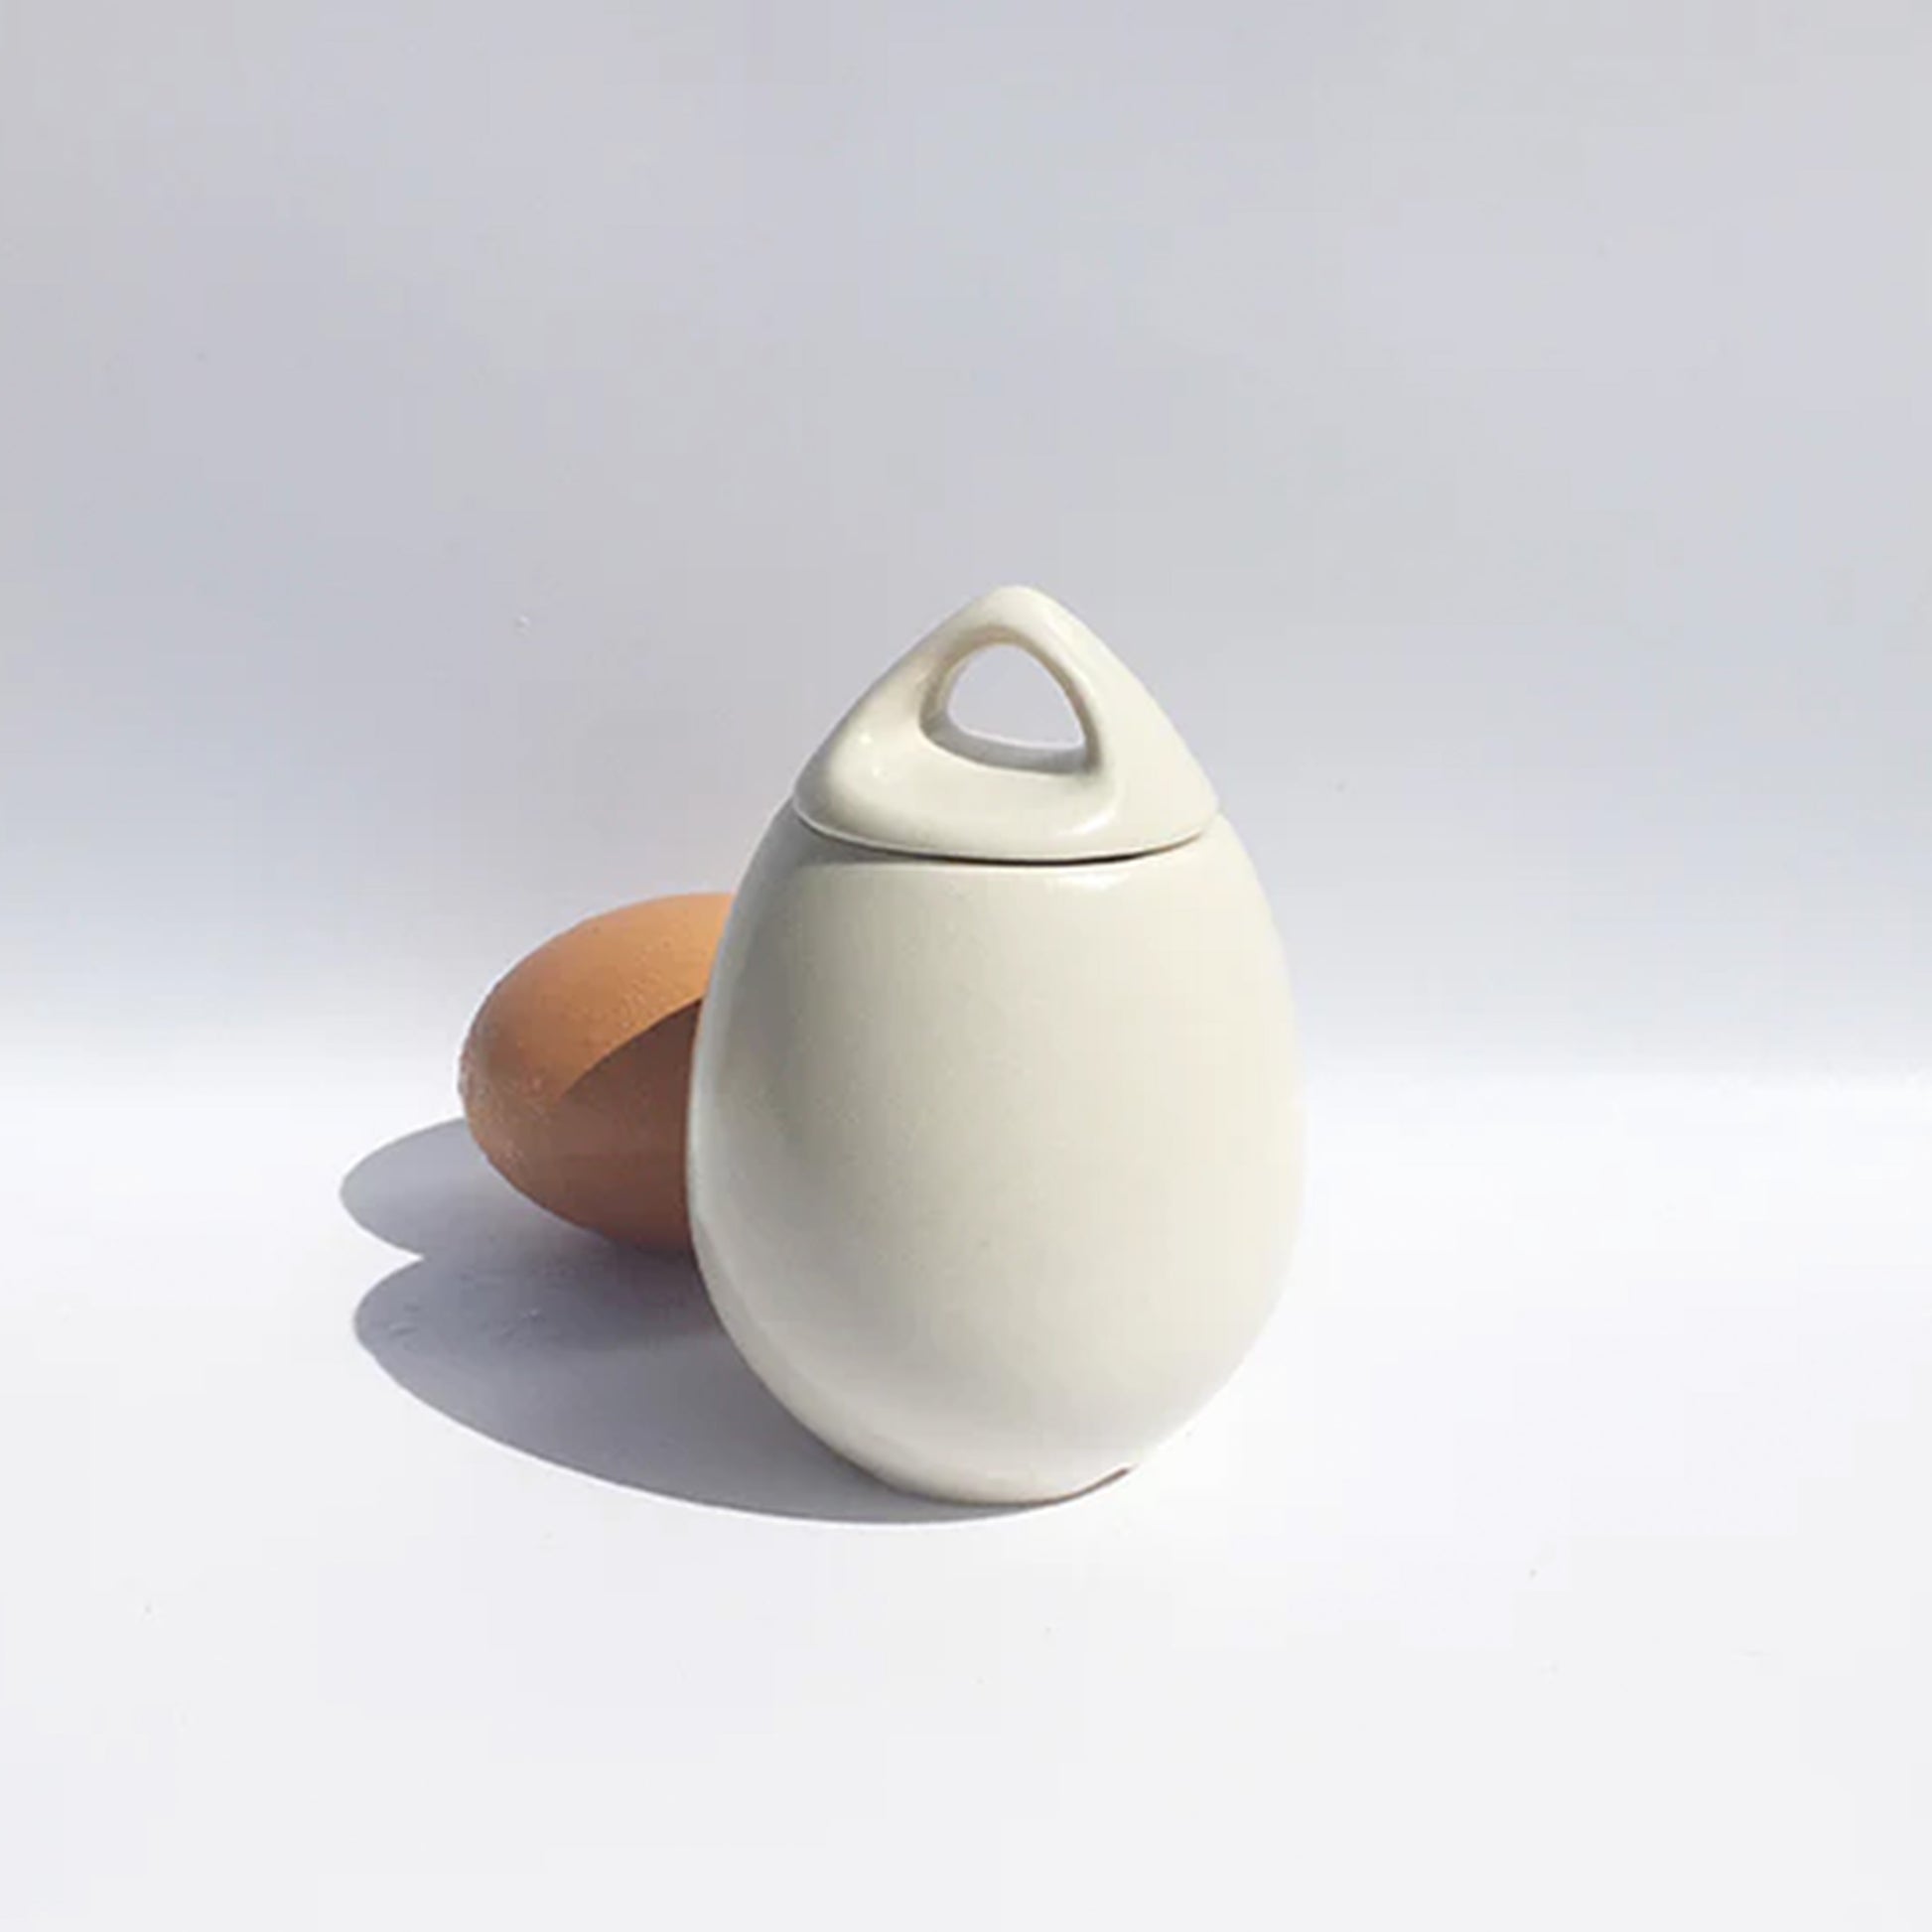 AggCoddler Small Julia Porcelain Multi-Purpose Gourmet Egg Cooker, 1-Egg Capacity